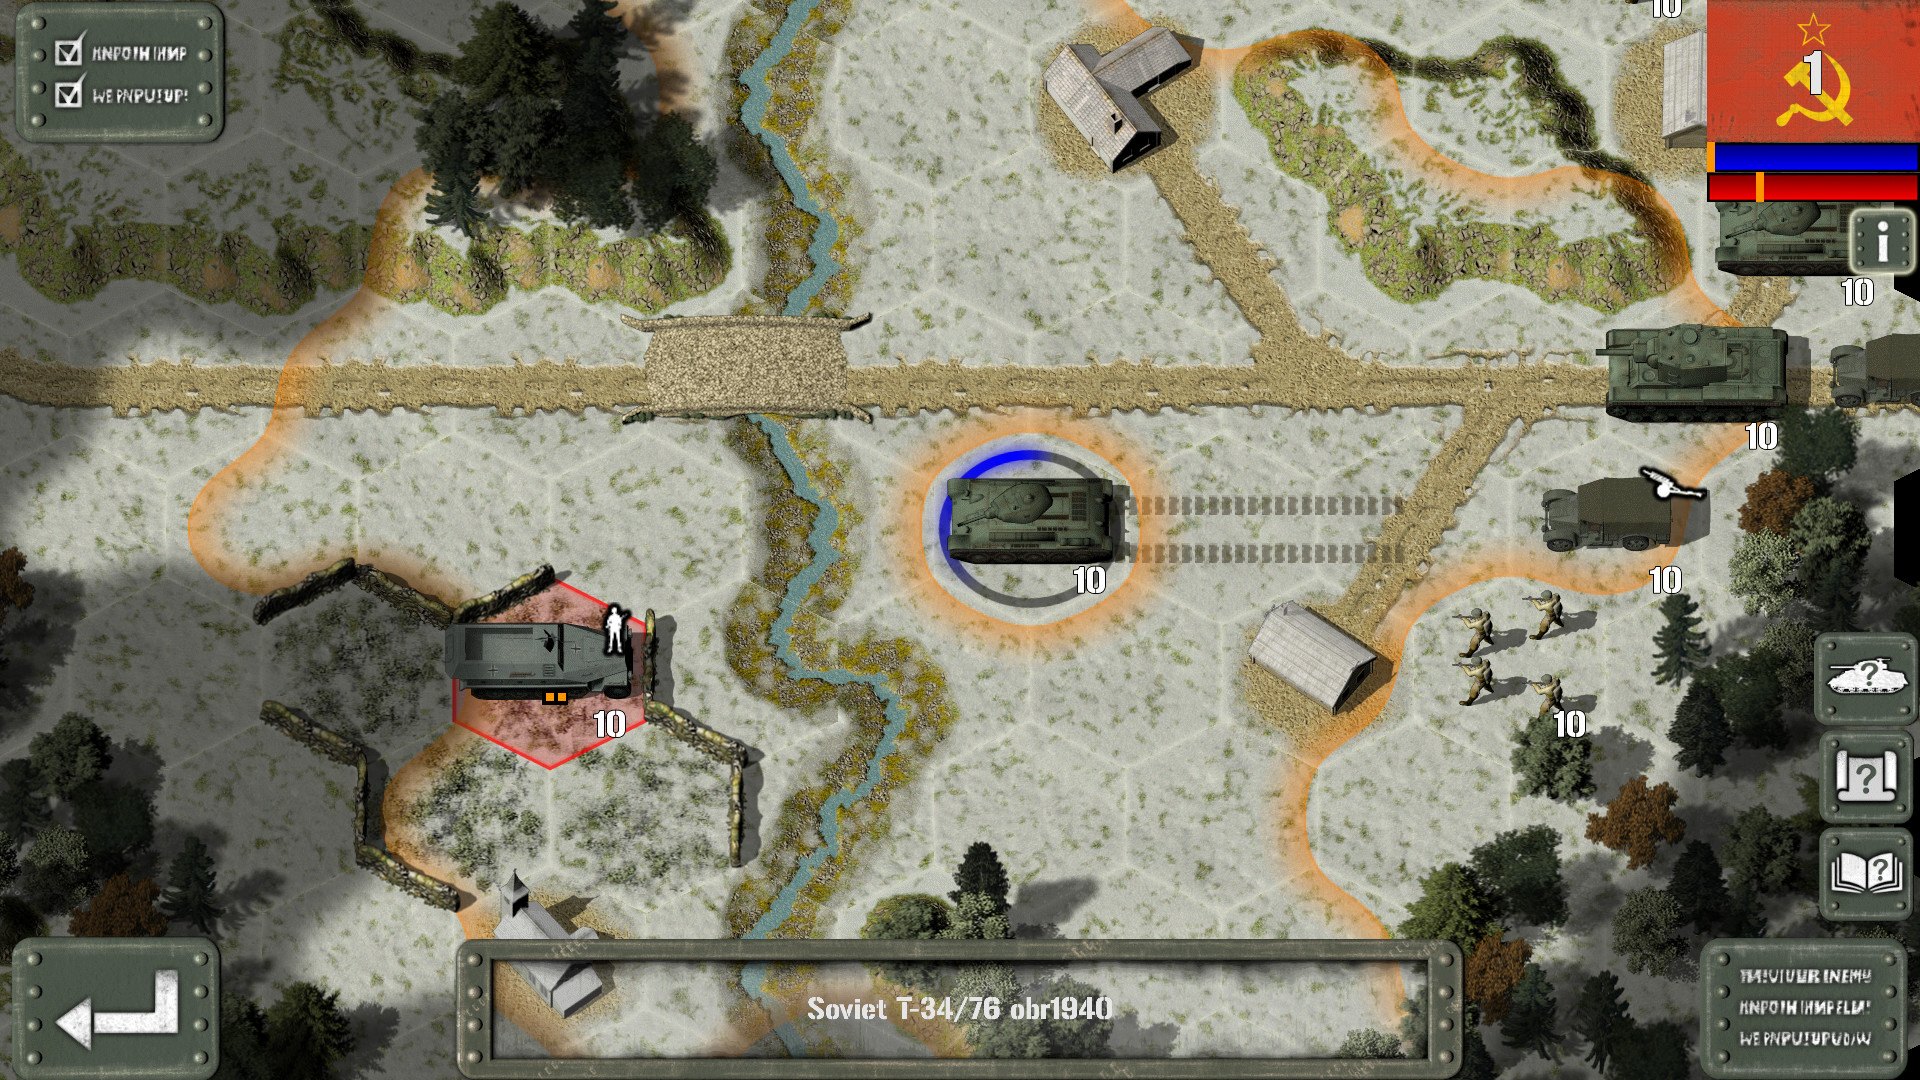 Tank Battle: East Front Steam CD Key